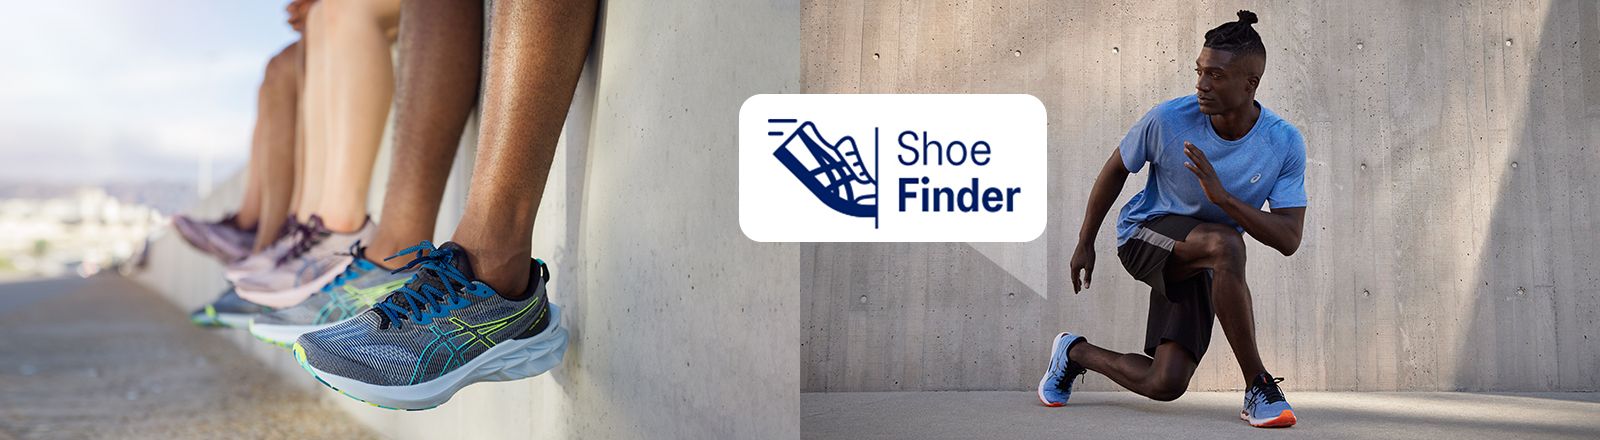 ASICS Shoe Finder